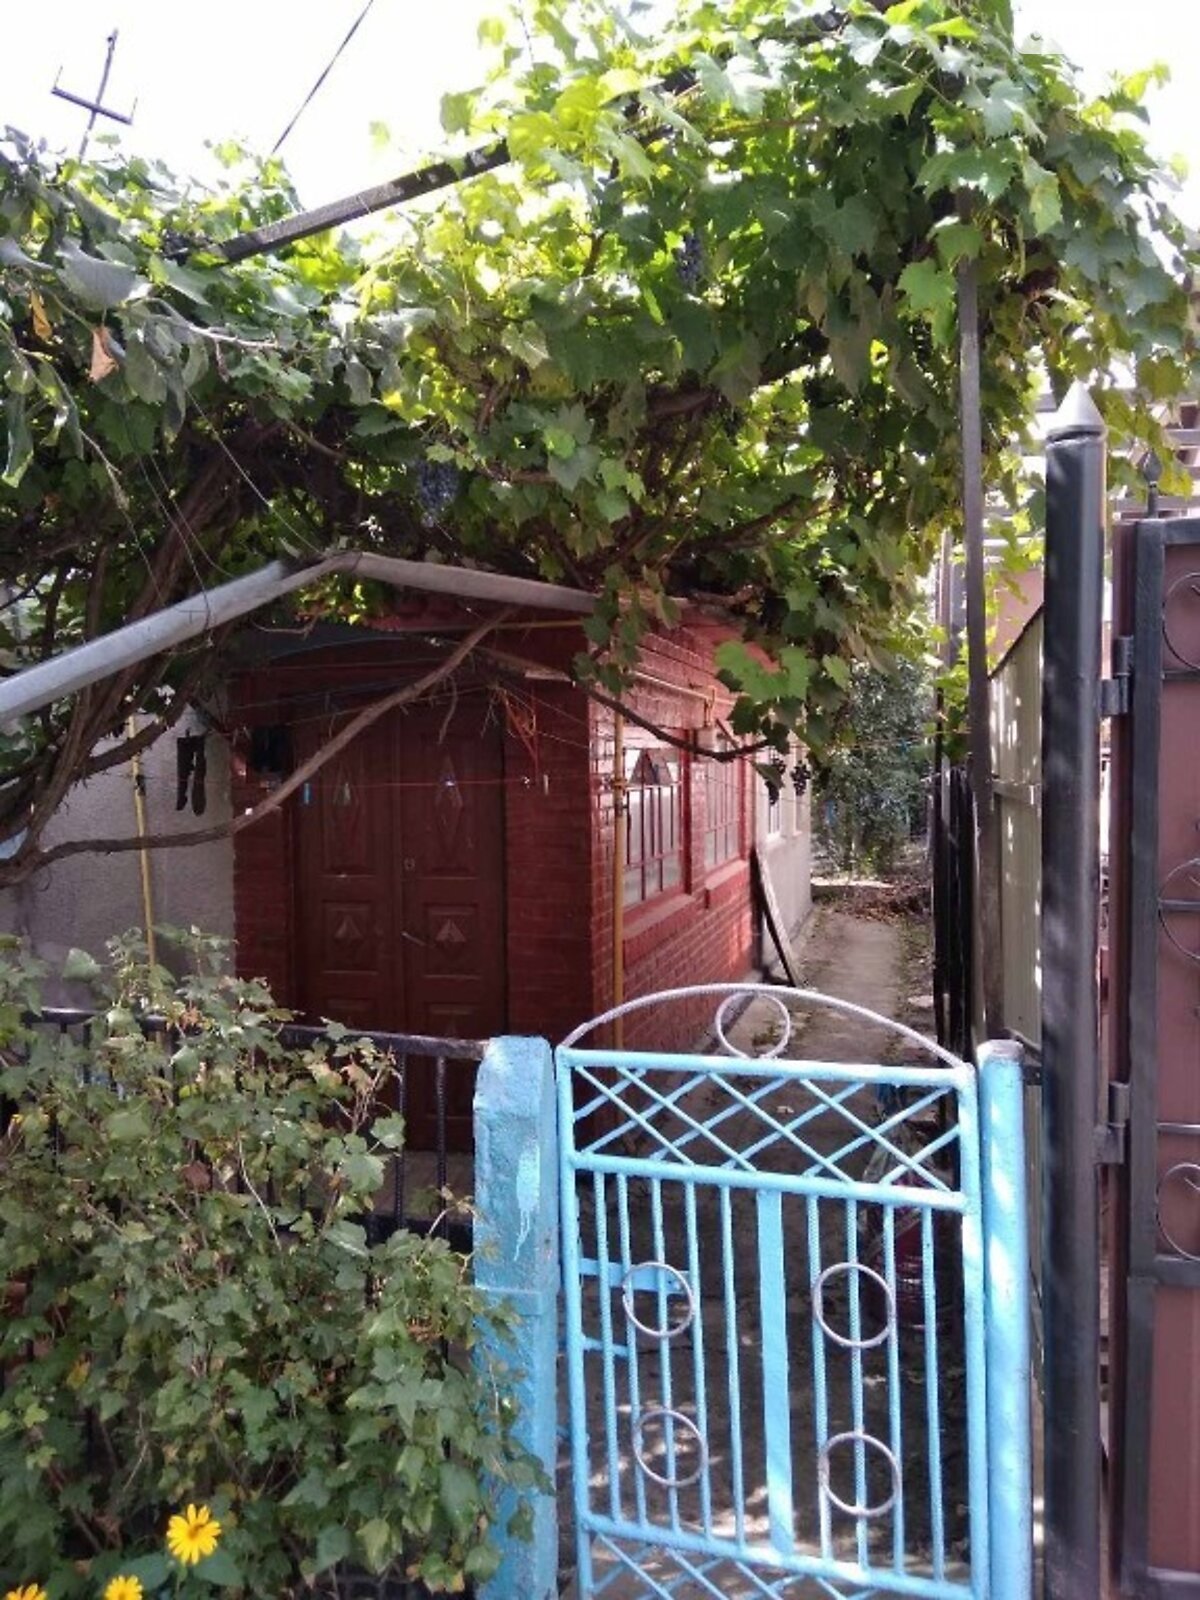 Продажа части дома в Хмельницком, улица Стенина (Проездная), район Дубово, 1 комната фото 1